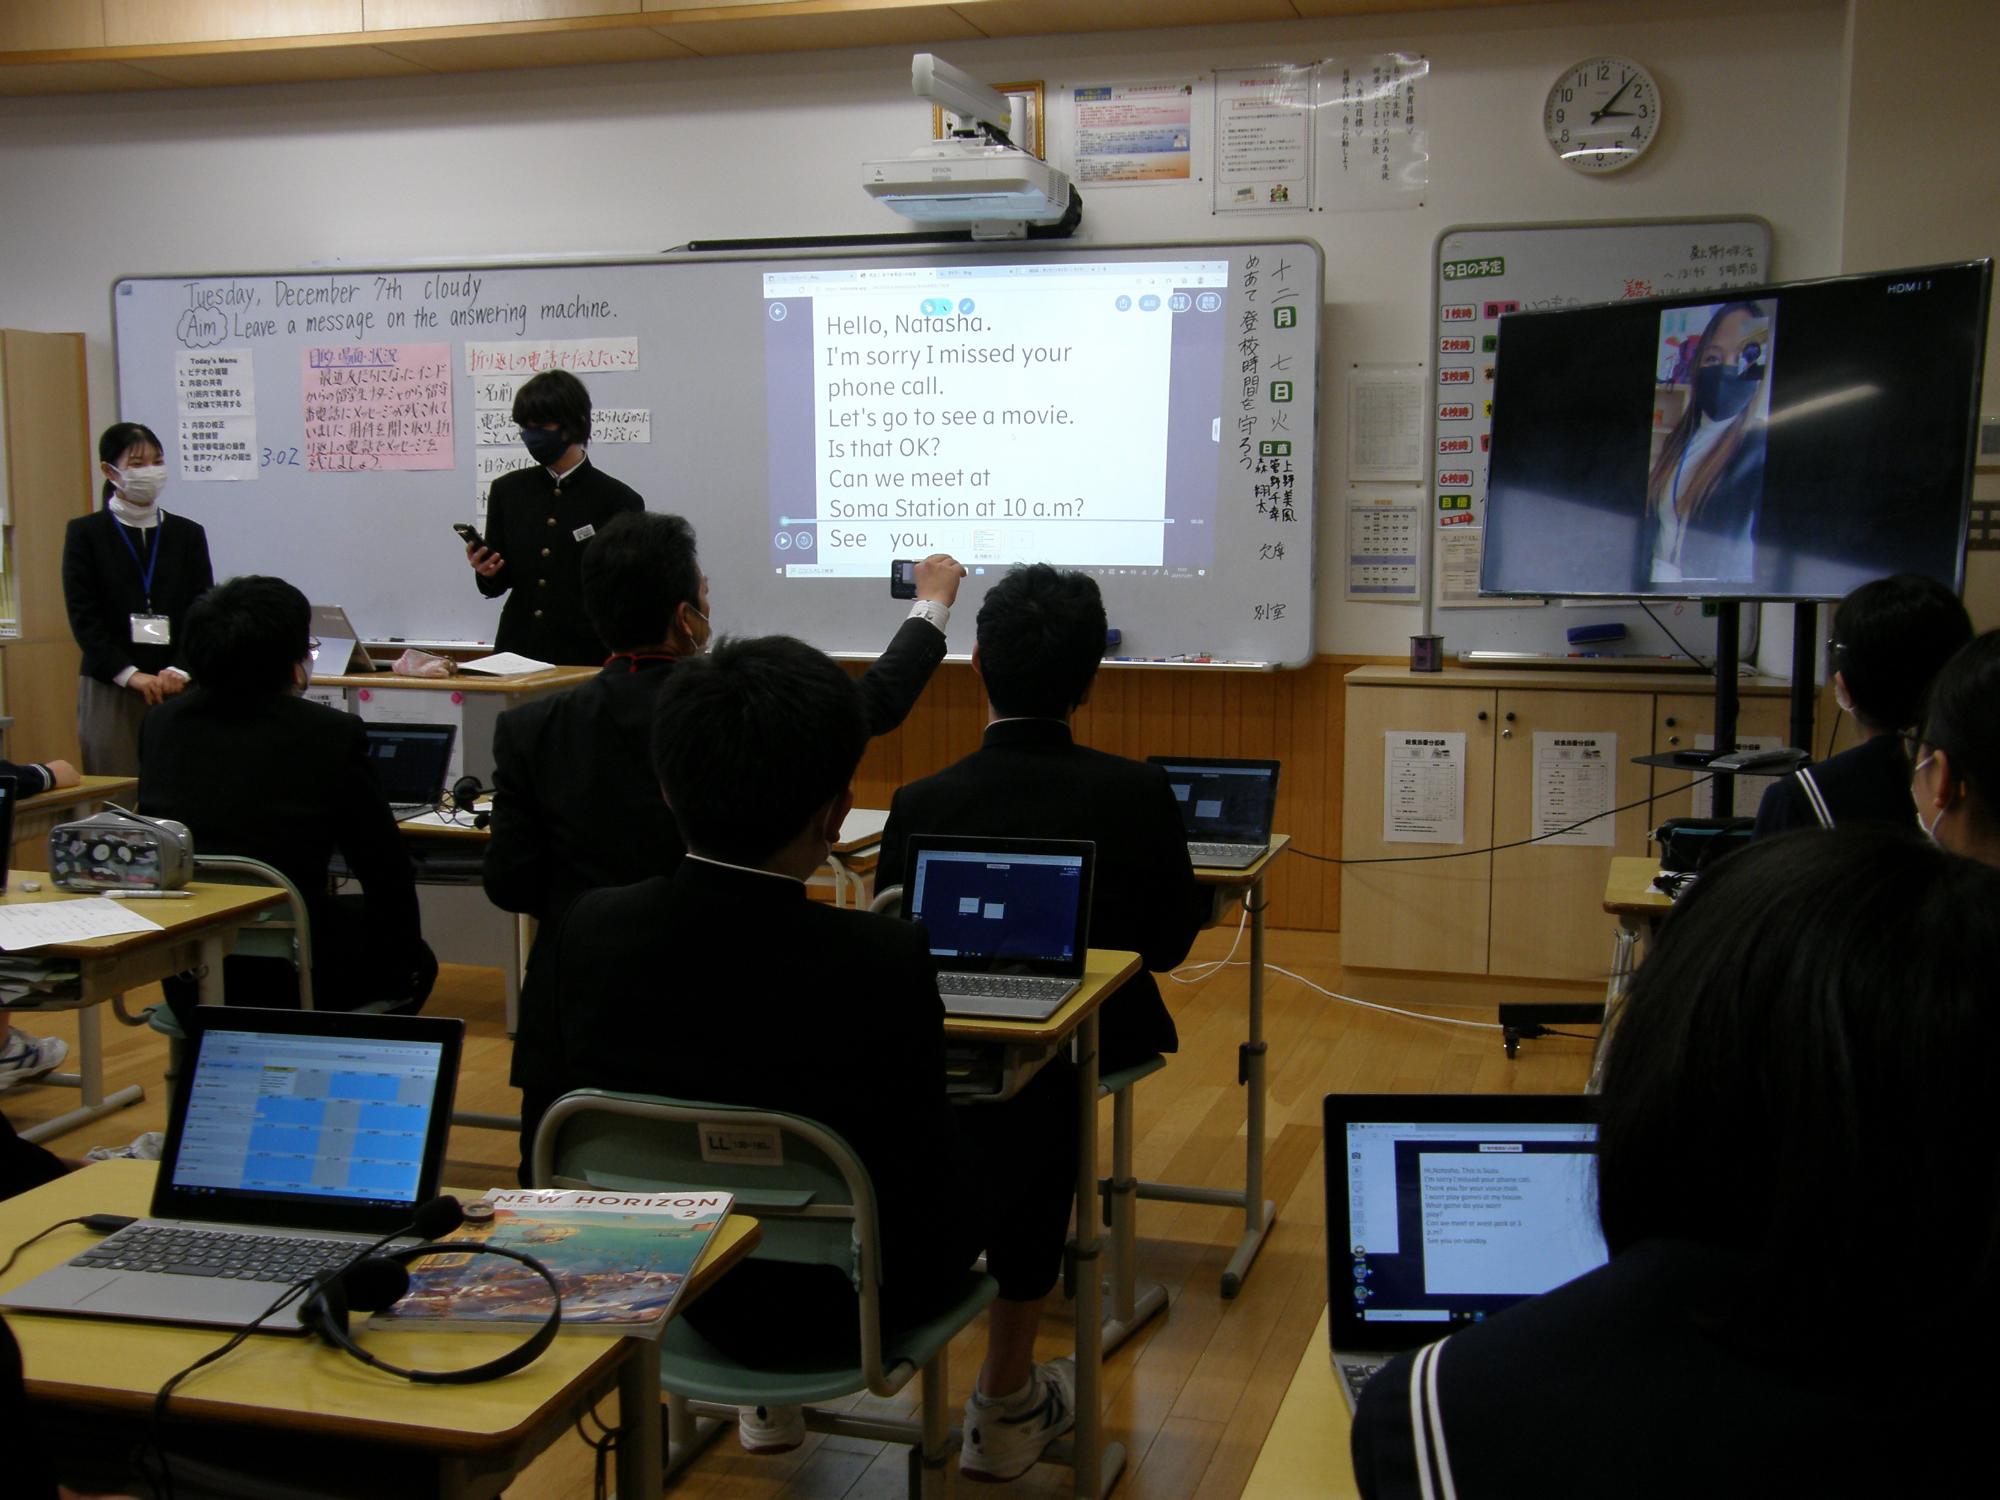 中村第二中学校公開授業において、英語の授業で端末を利用して英語でテレビ電話をする様子